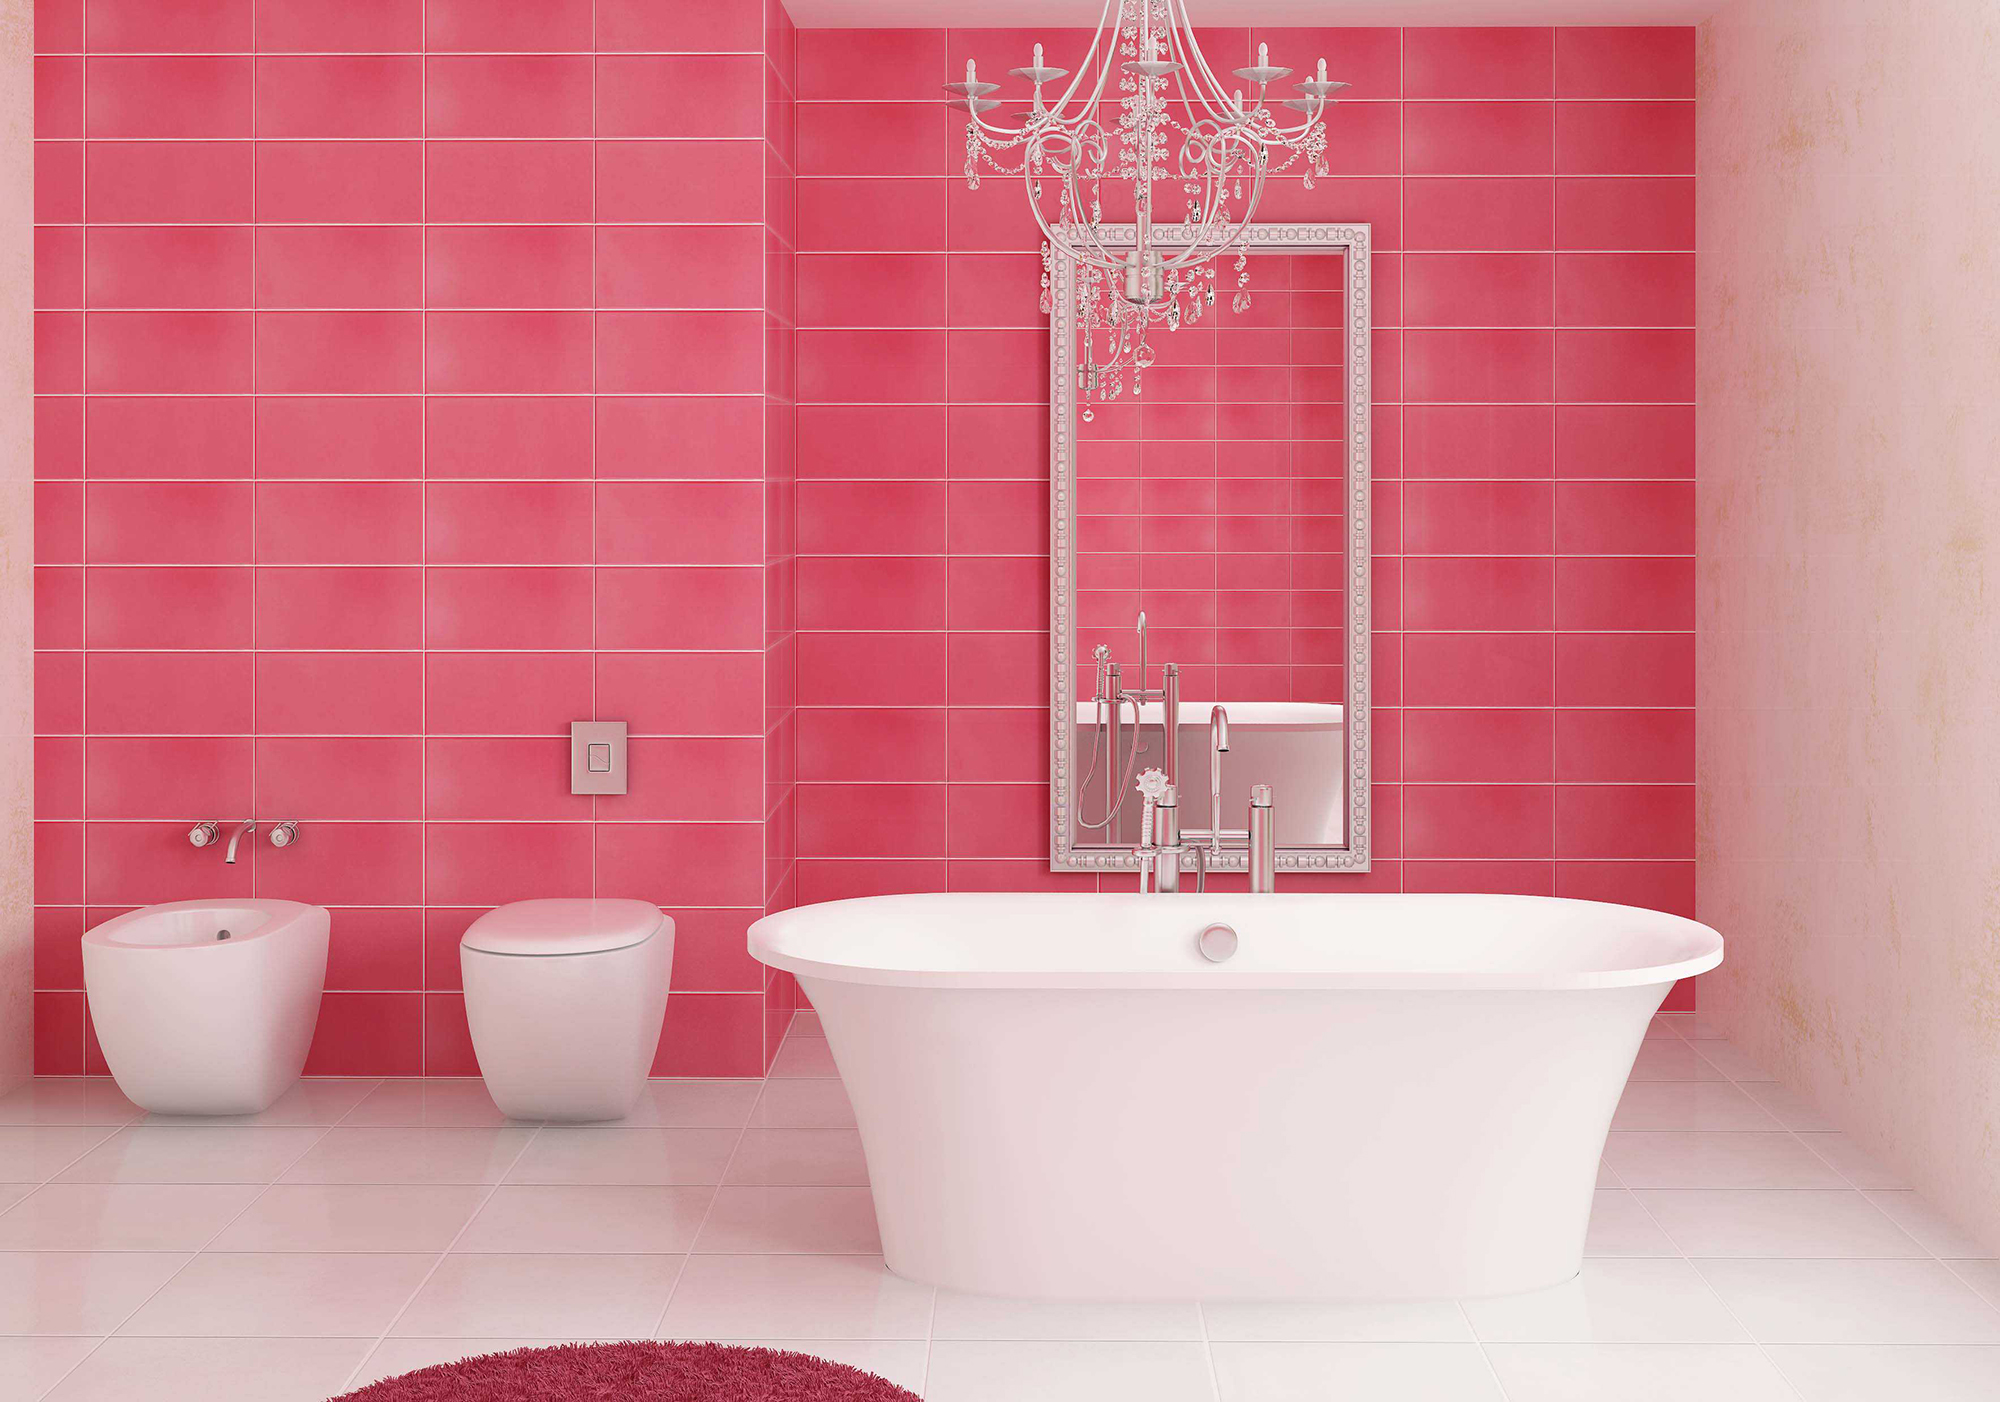 Розовая плитка и коврик в ванной